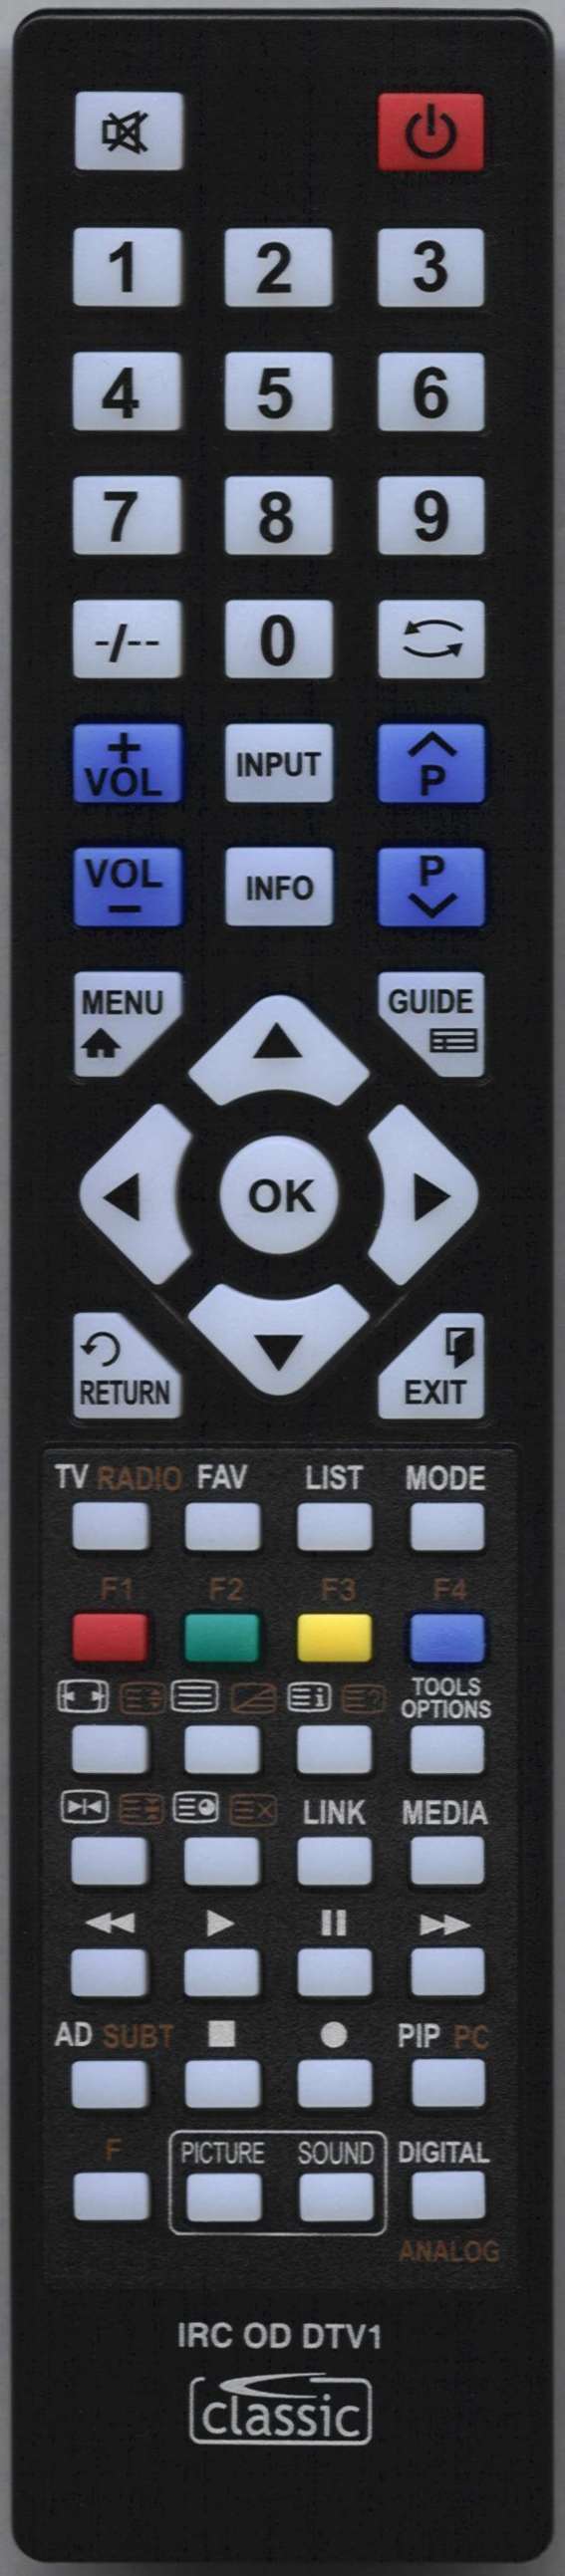 TECHNIKA LCD32-612 Remote Control